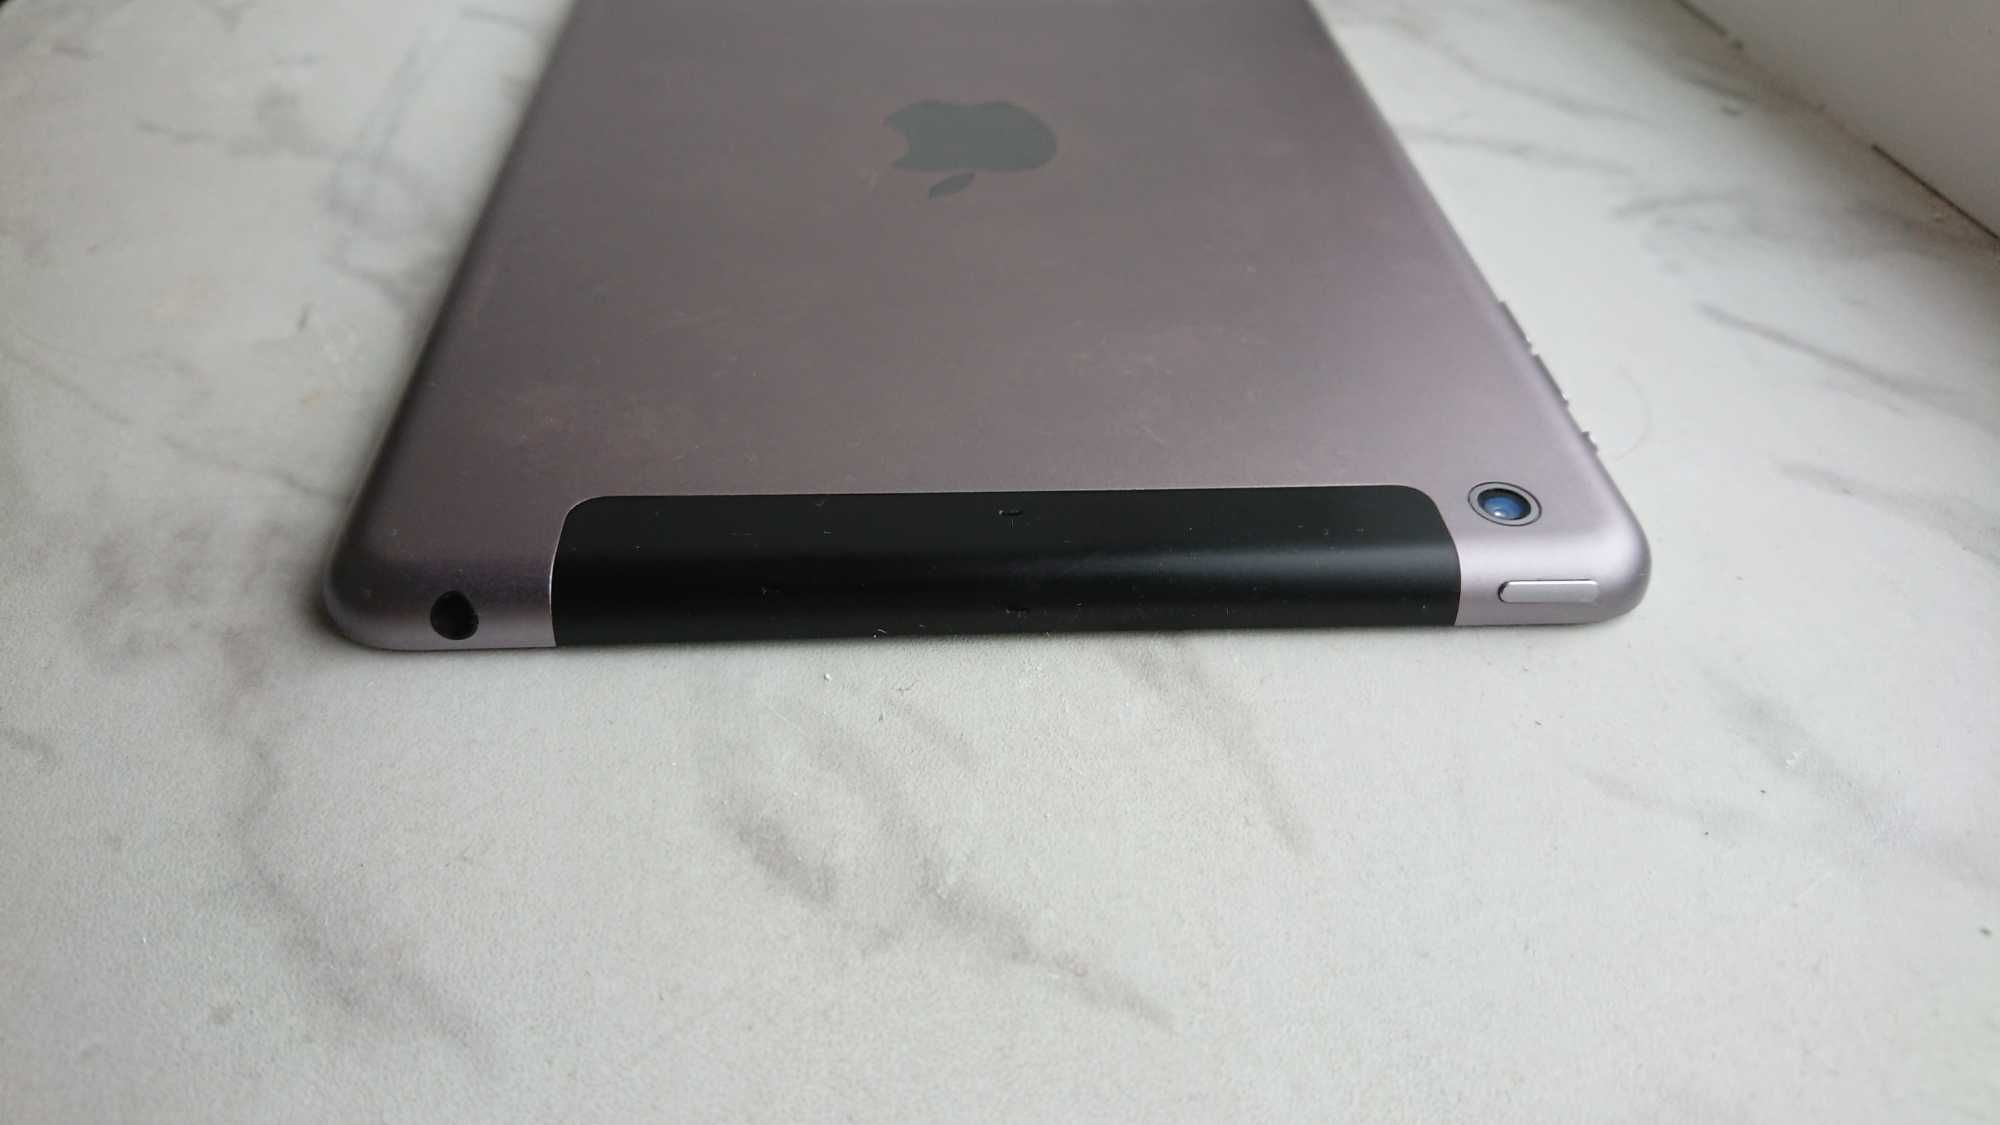 iPad Mini 2 Space Grey 32gb WiFi + LTE